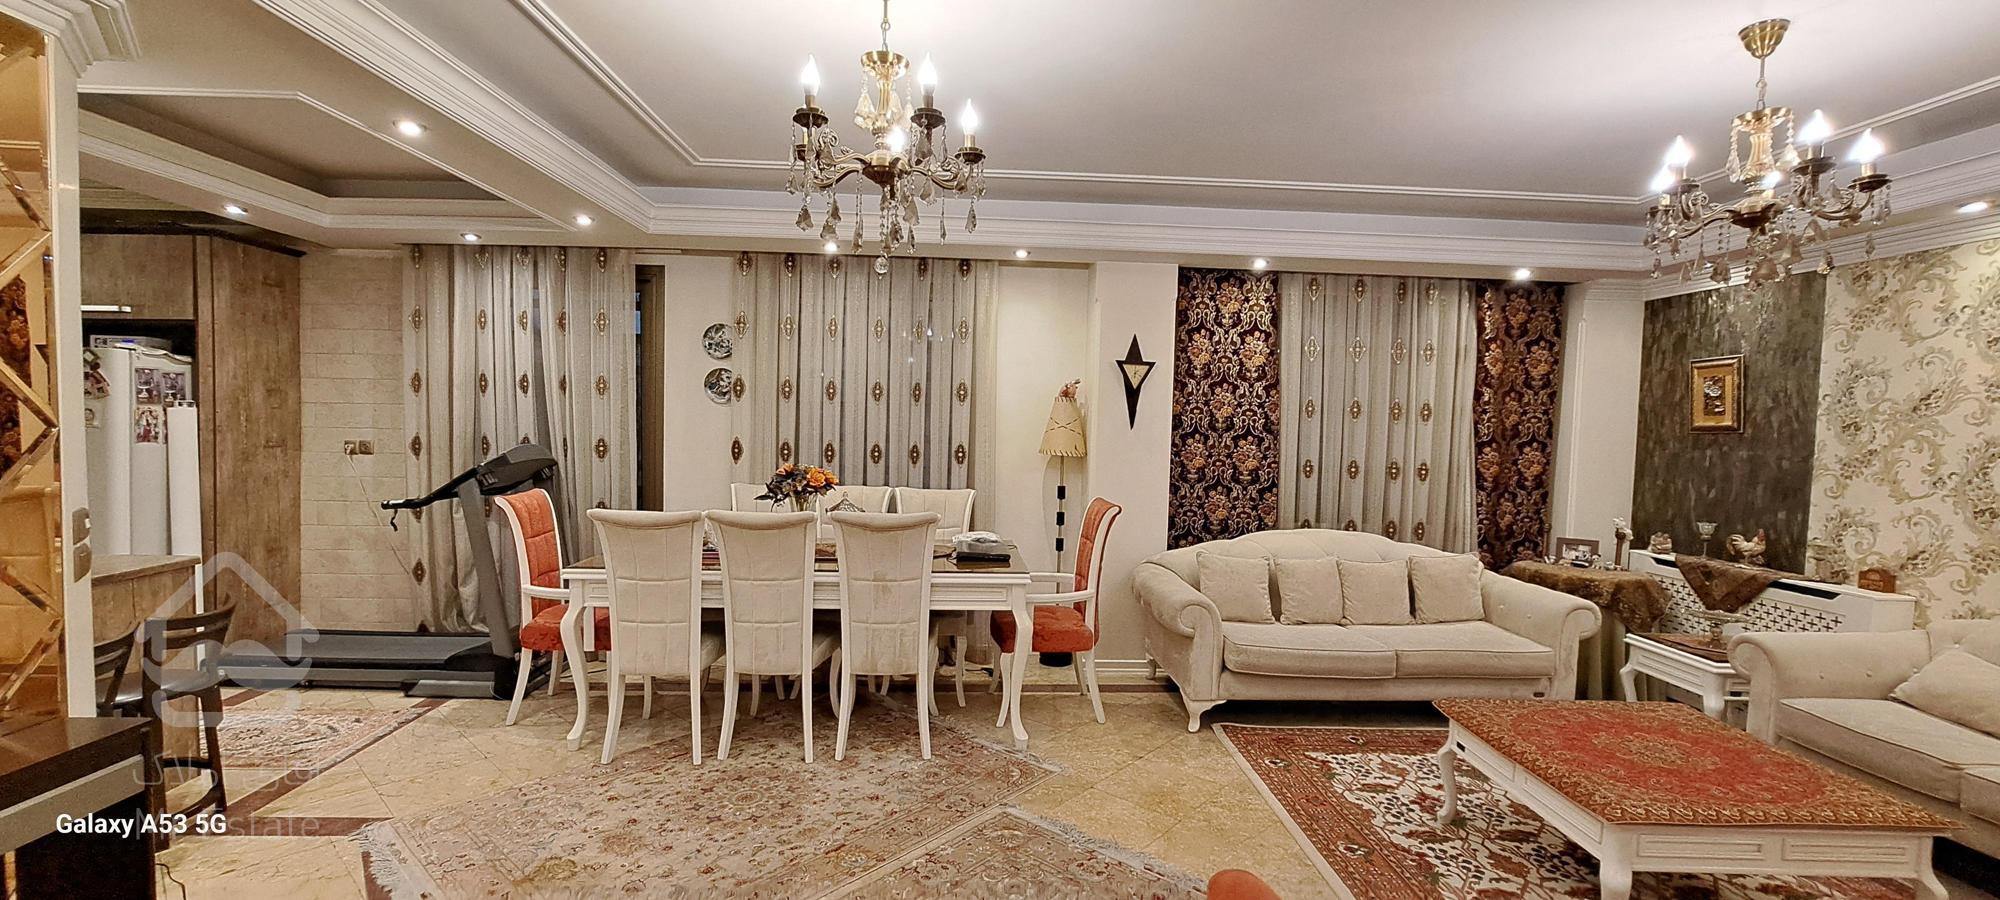 فروش آپارتمان مسکونی شمال ظفر 115متر ۳خواب دنج و مشجر غرق نور و پنجره